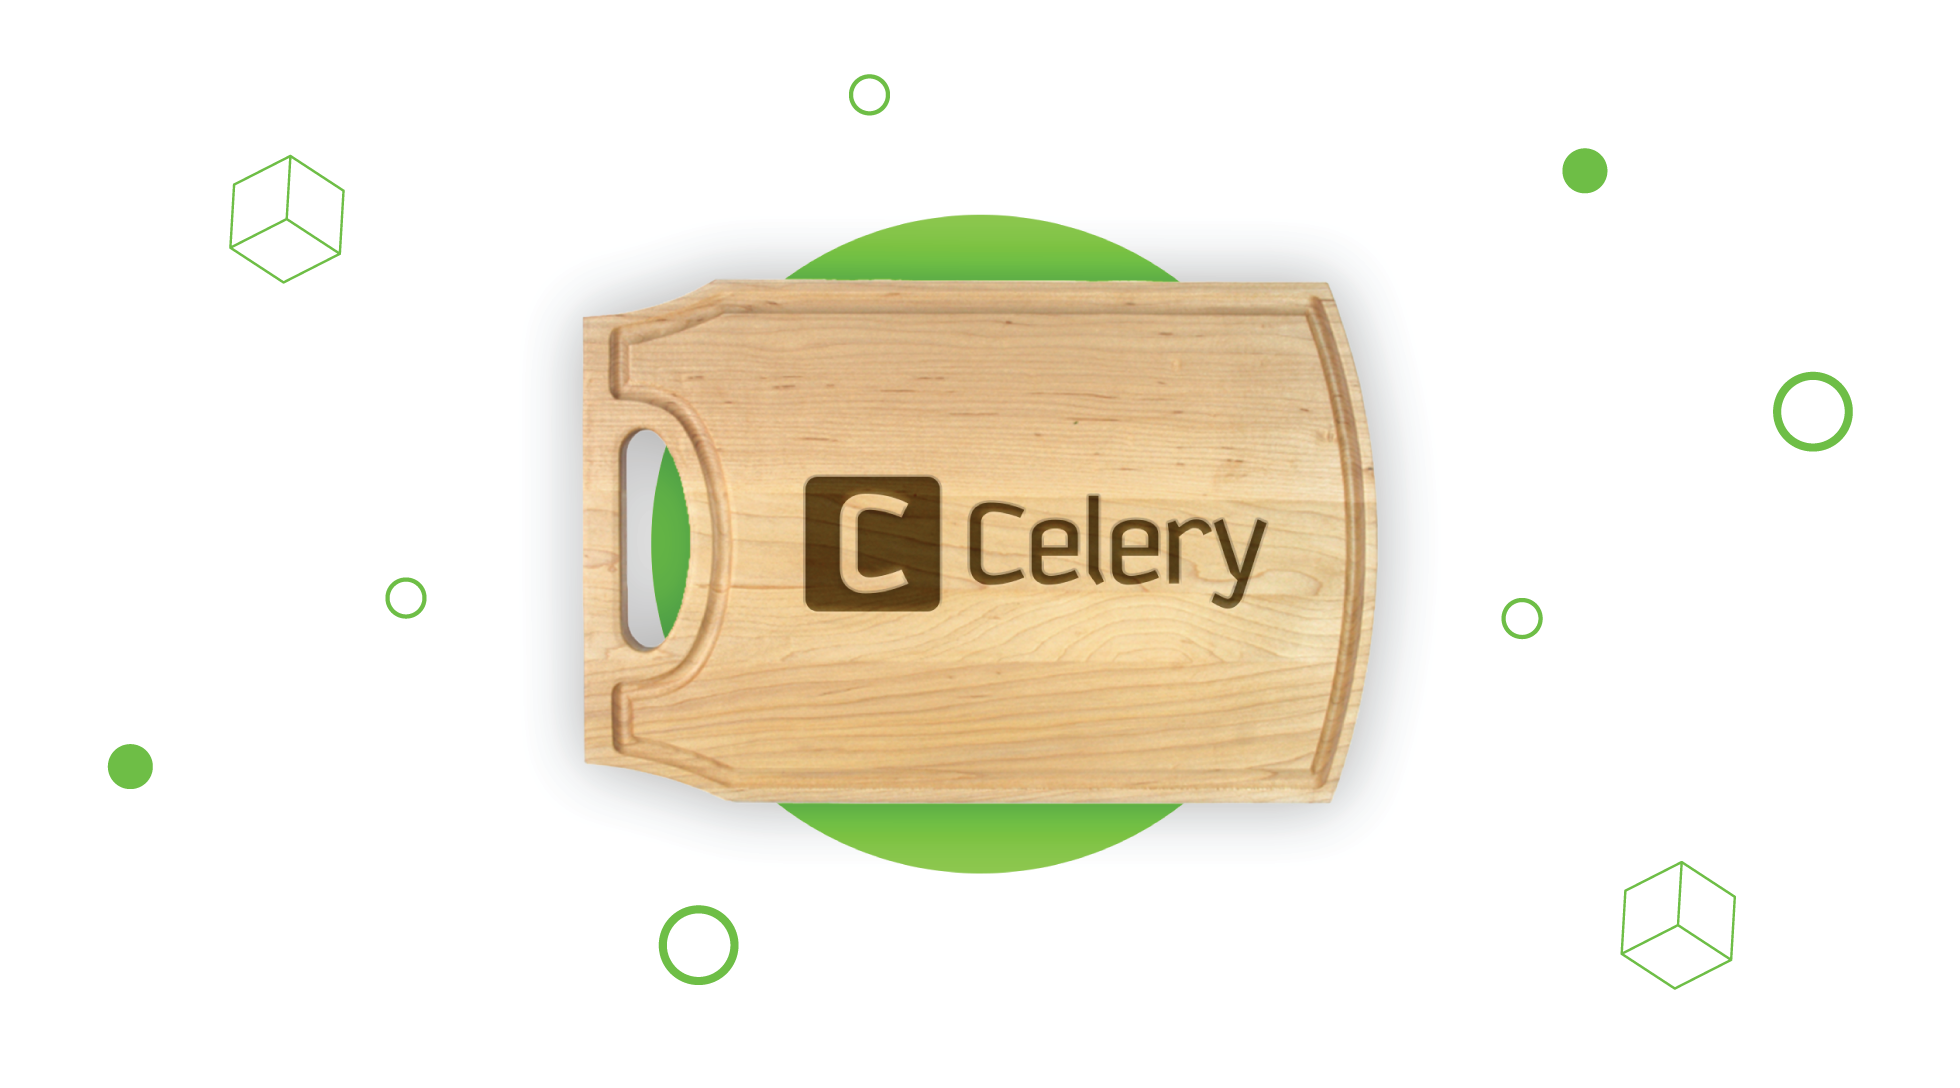 一个简易的celery+sqlite案例